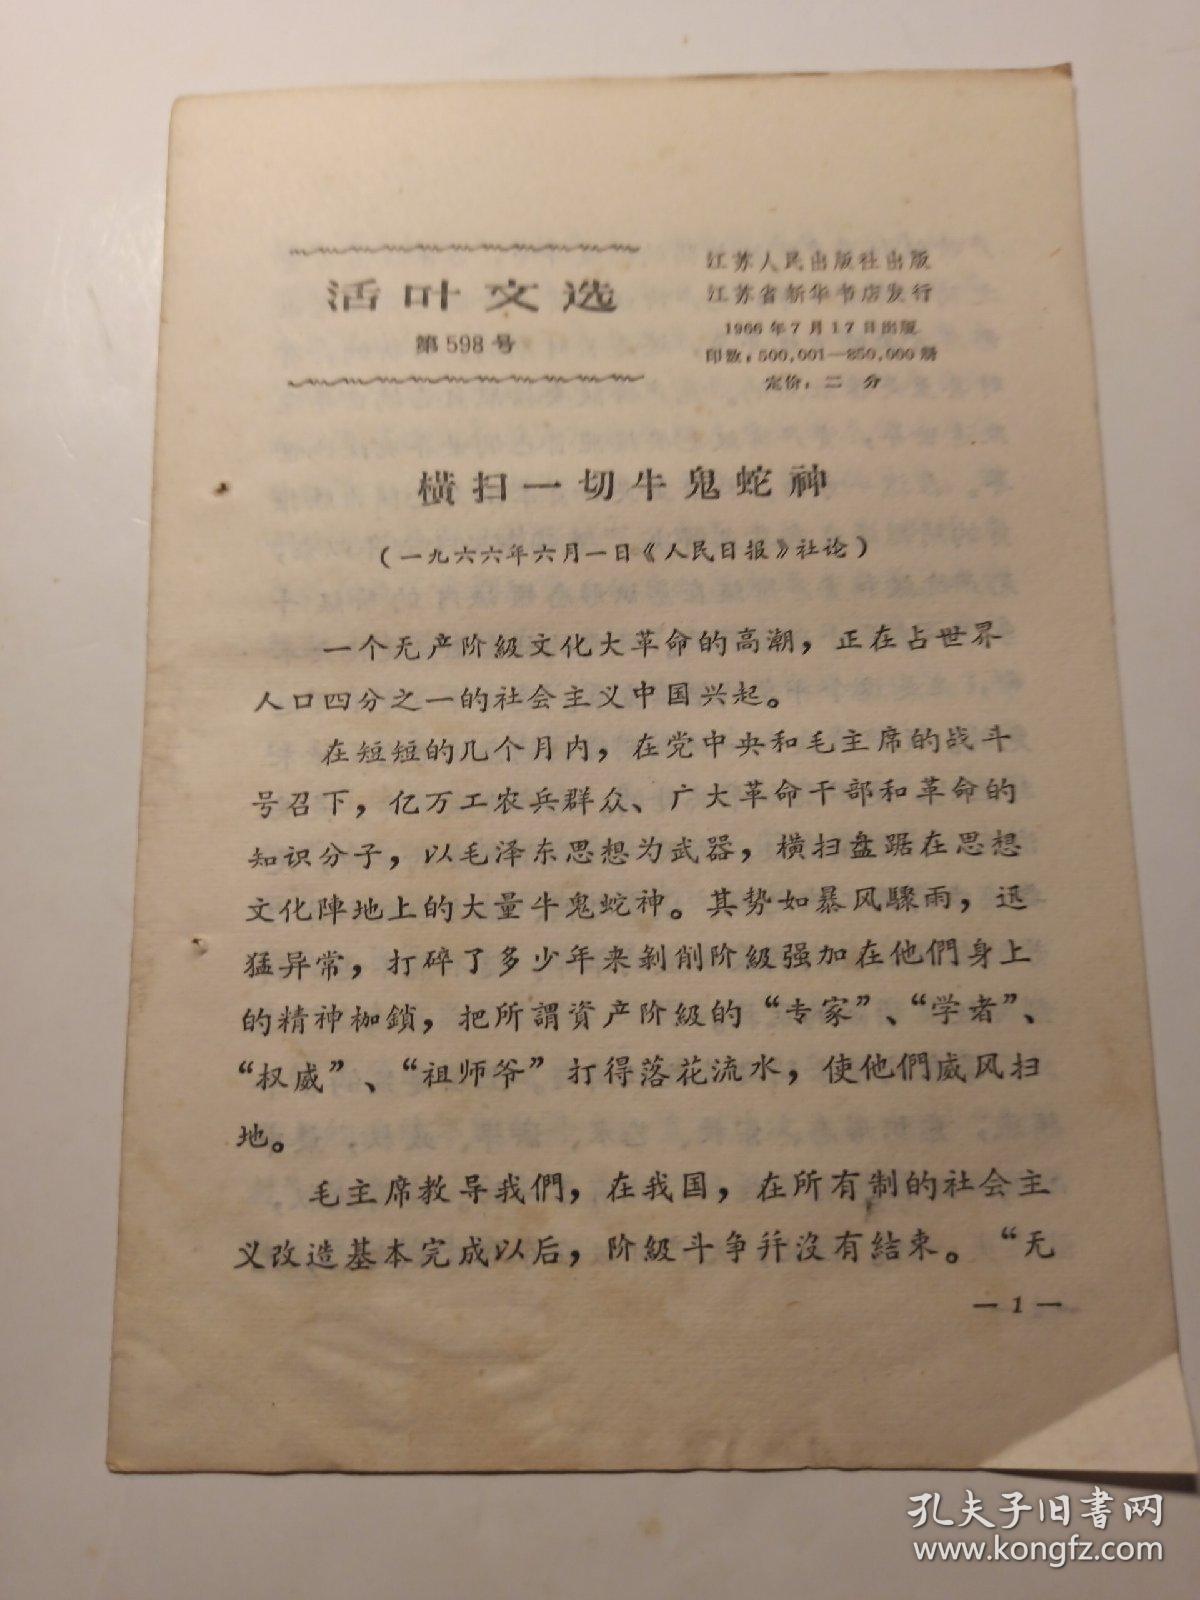 1966年7月  江苏人民出版社  活页文选  第598号    横扫一切牛鬼蛇神